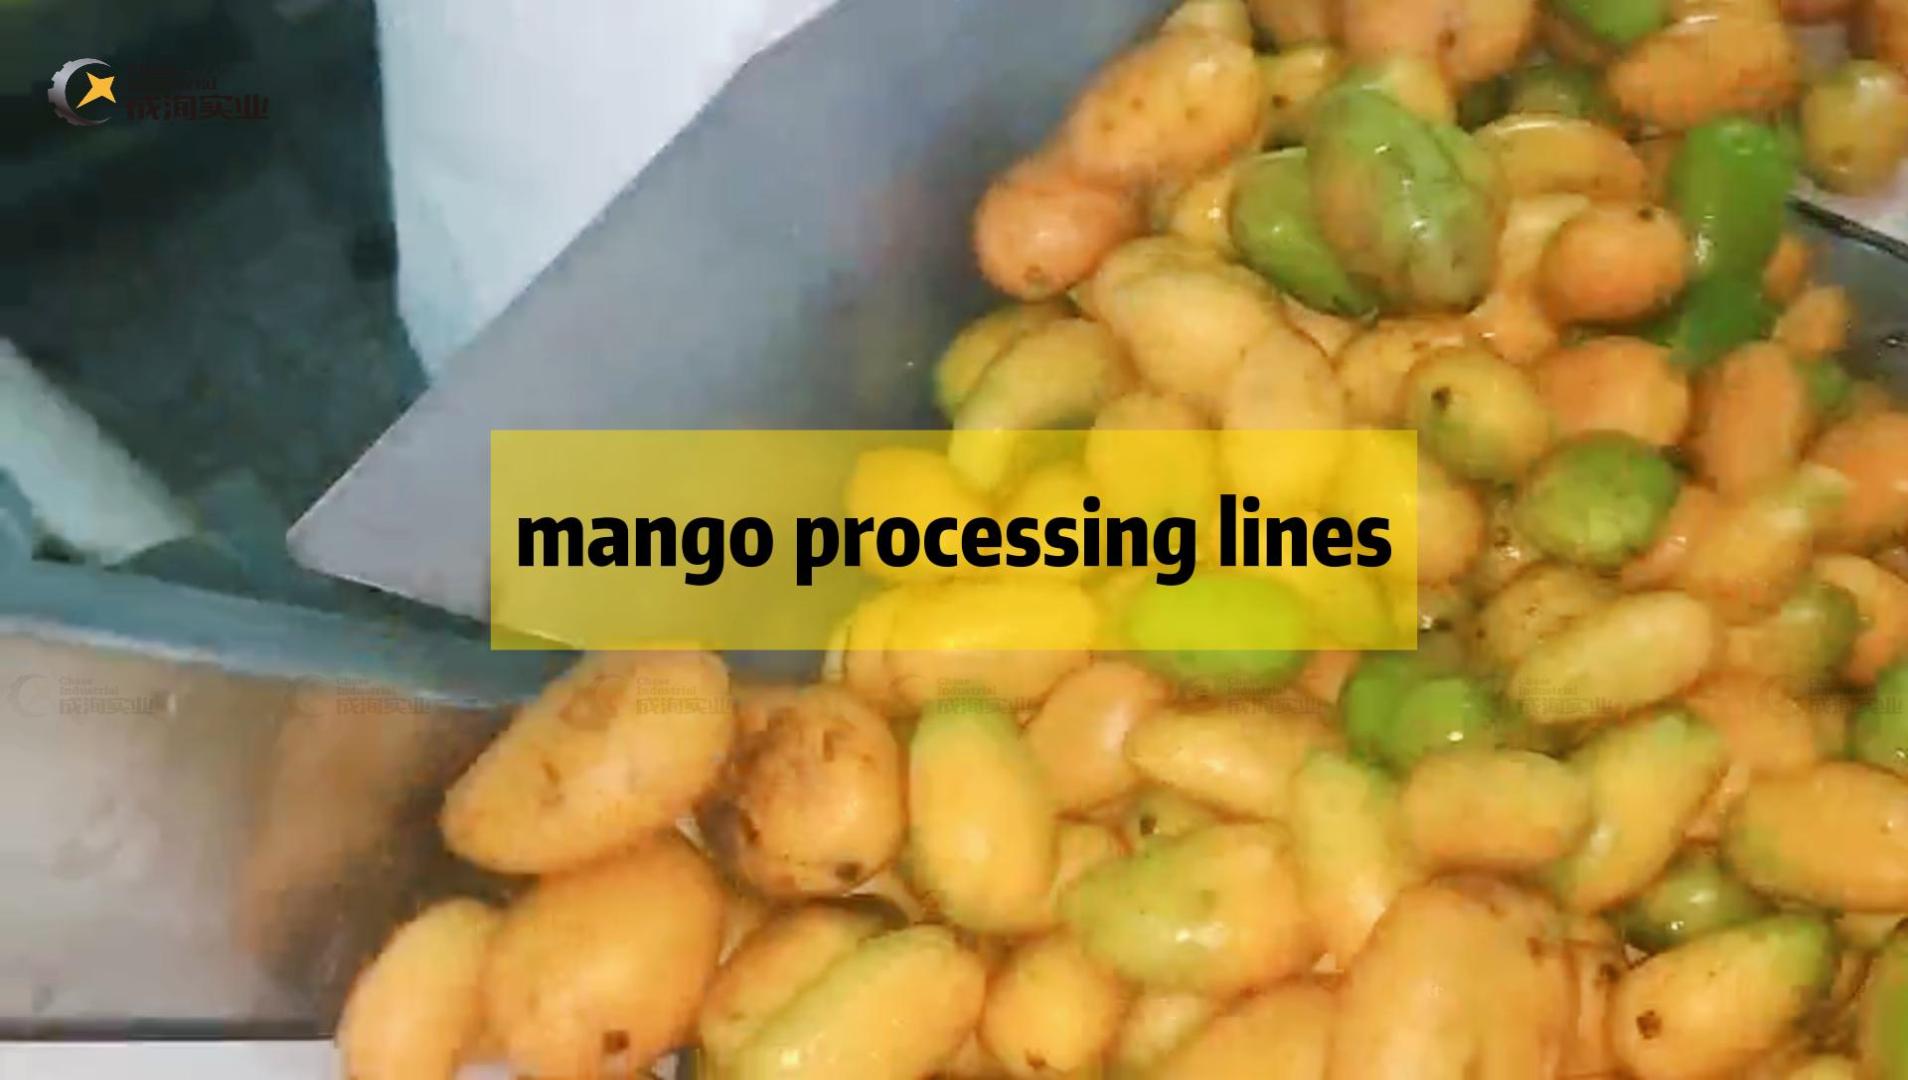 Hochwertige Mangopulpe-Verarbeitungslinie schlüsselfertiges Projekt zur Abfüllung von Kunststoffflaschen aus Shanghai 2022, China